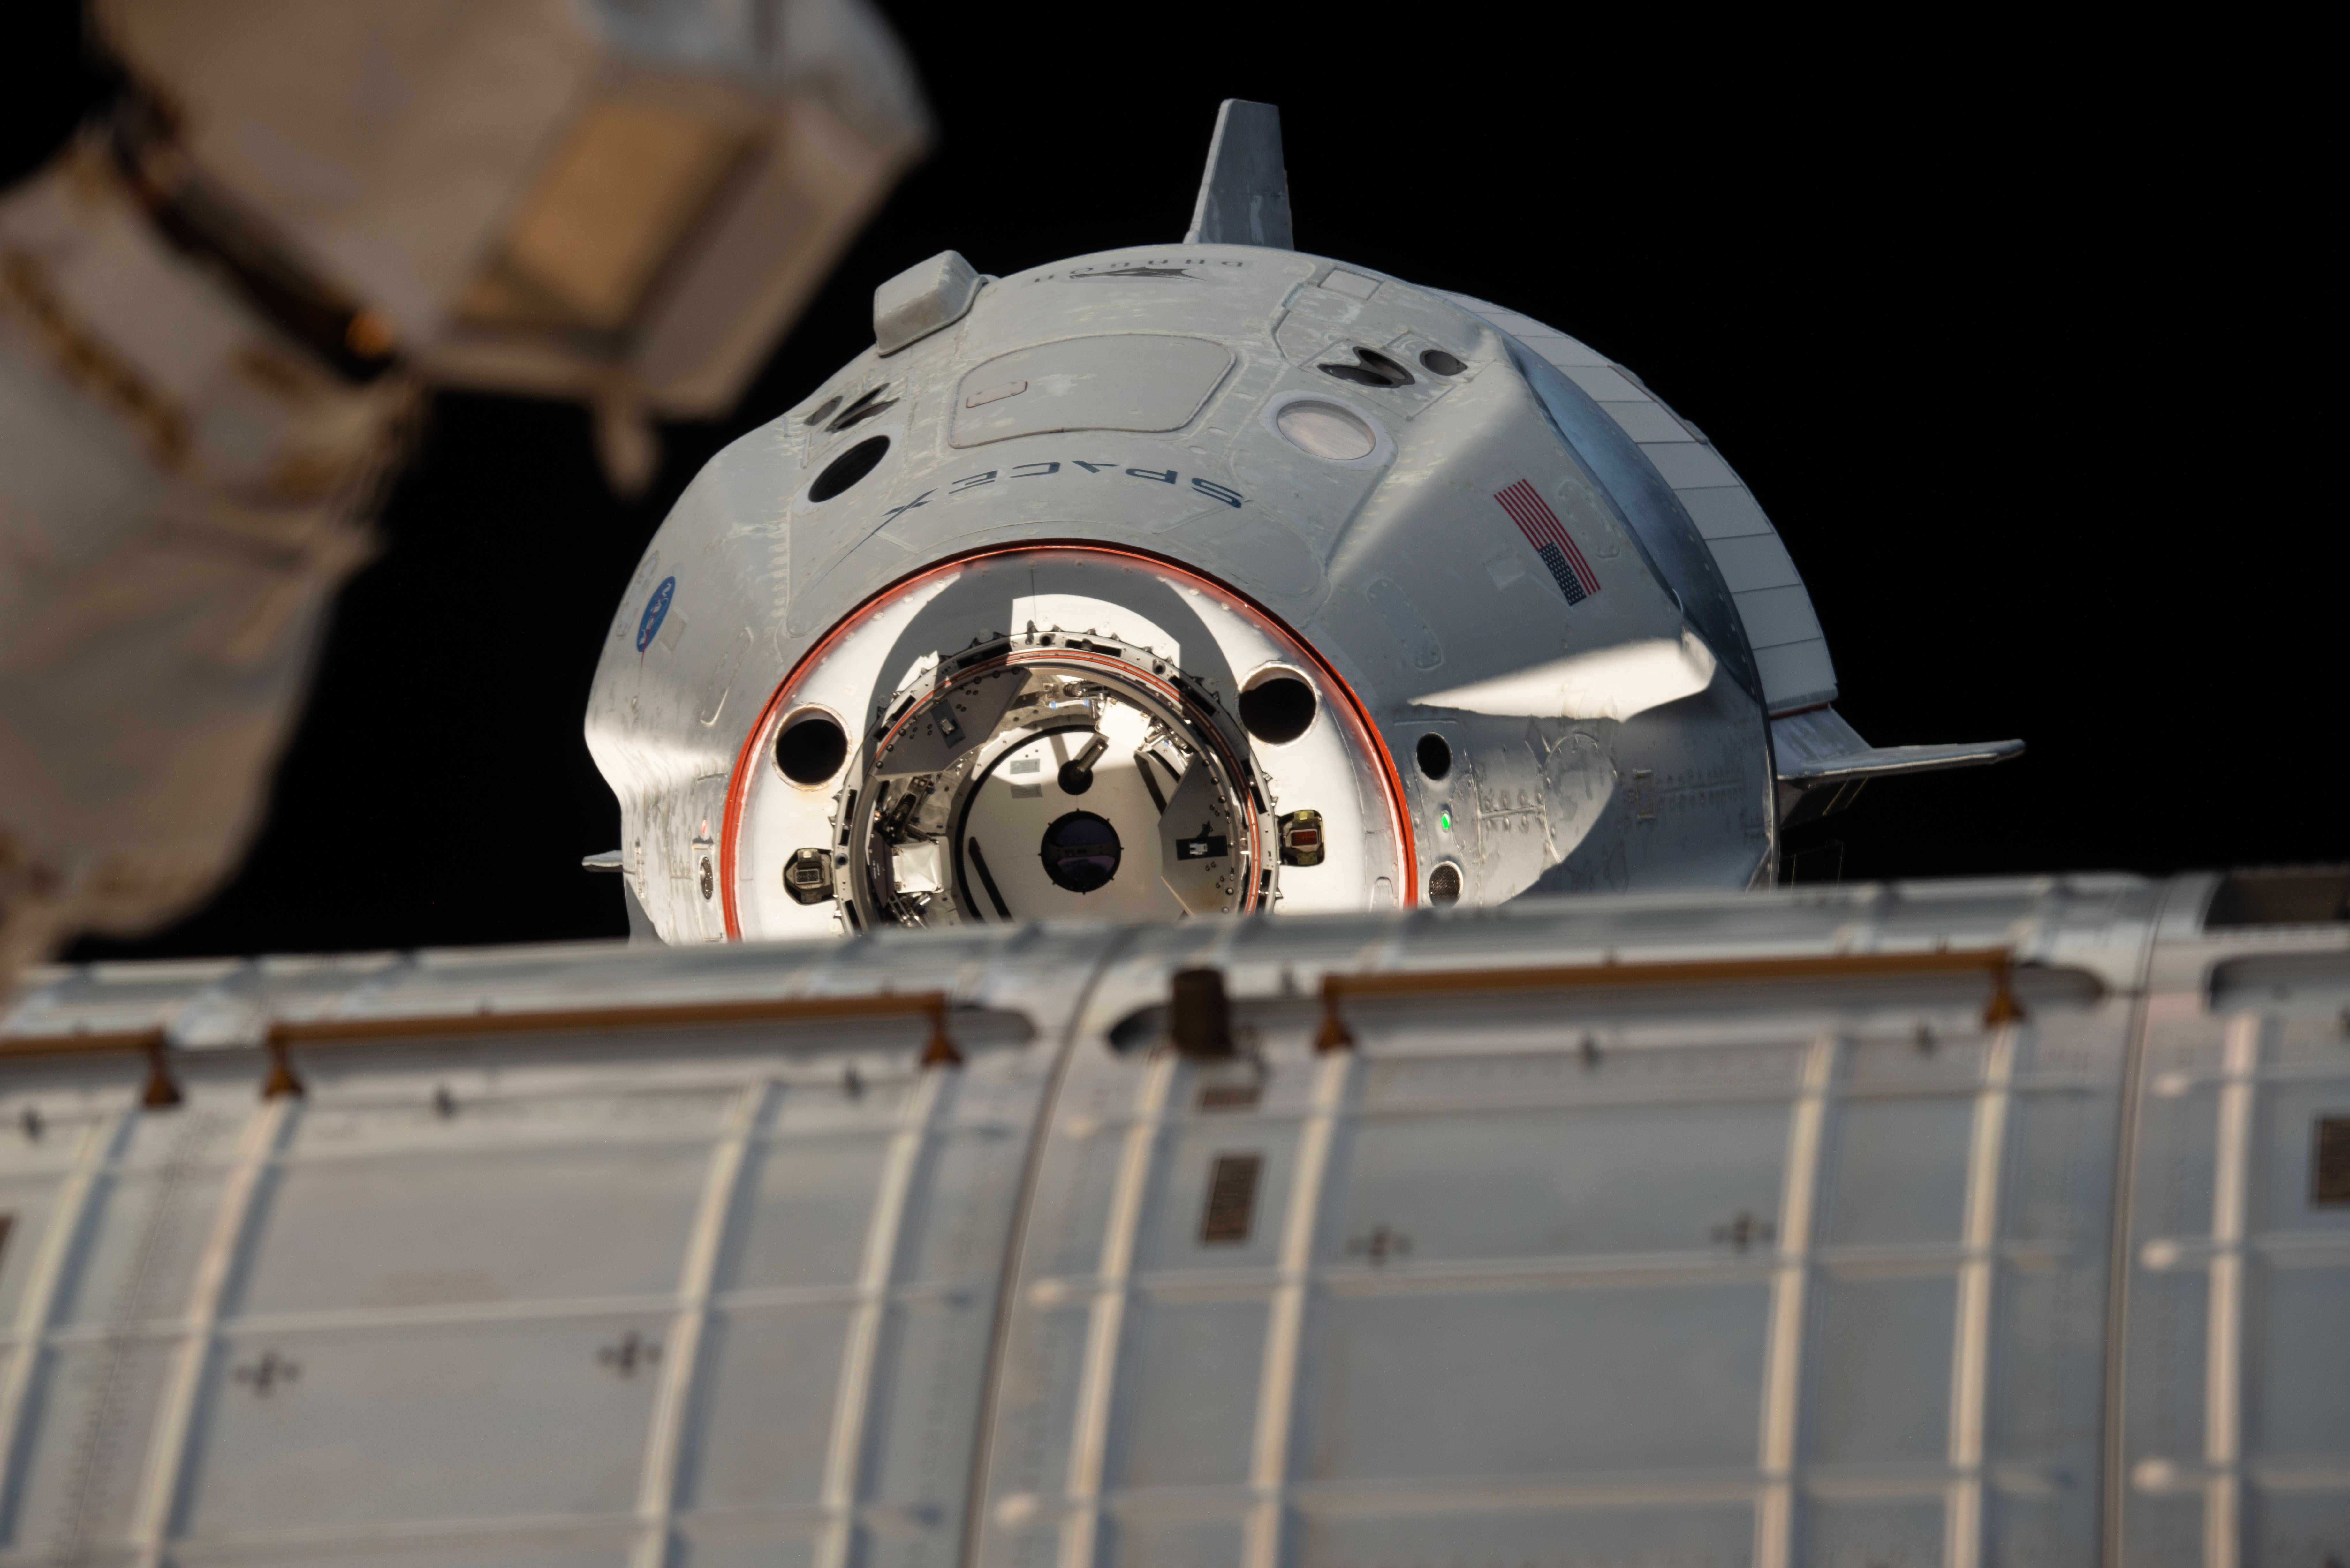 Statek Dragon 2 zbliżający się do ISS podczas misji Crew Demo-1 (Źródło: NASA)